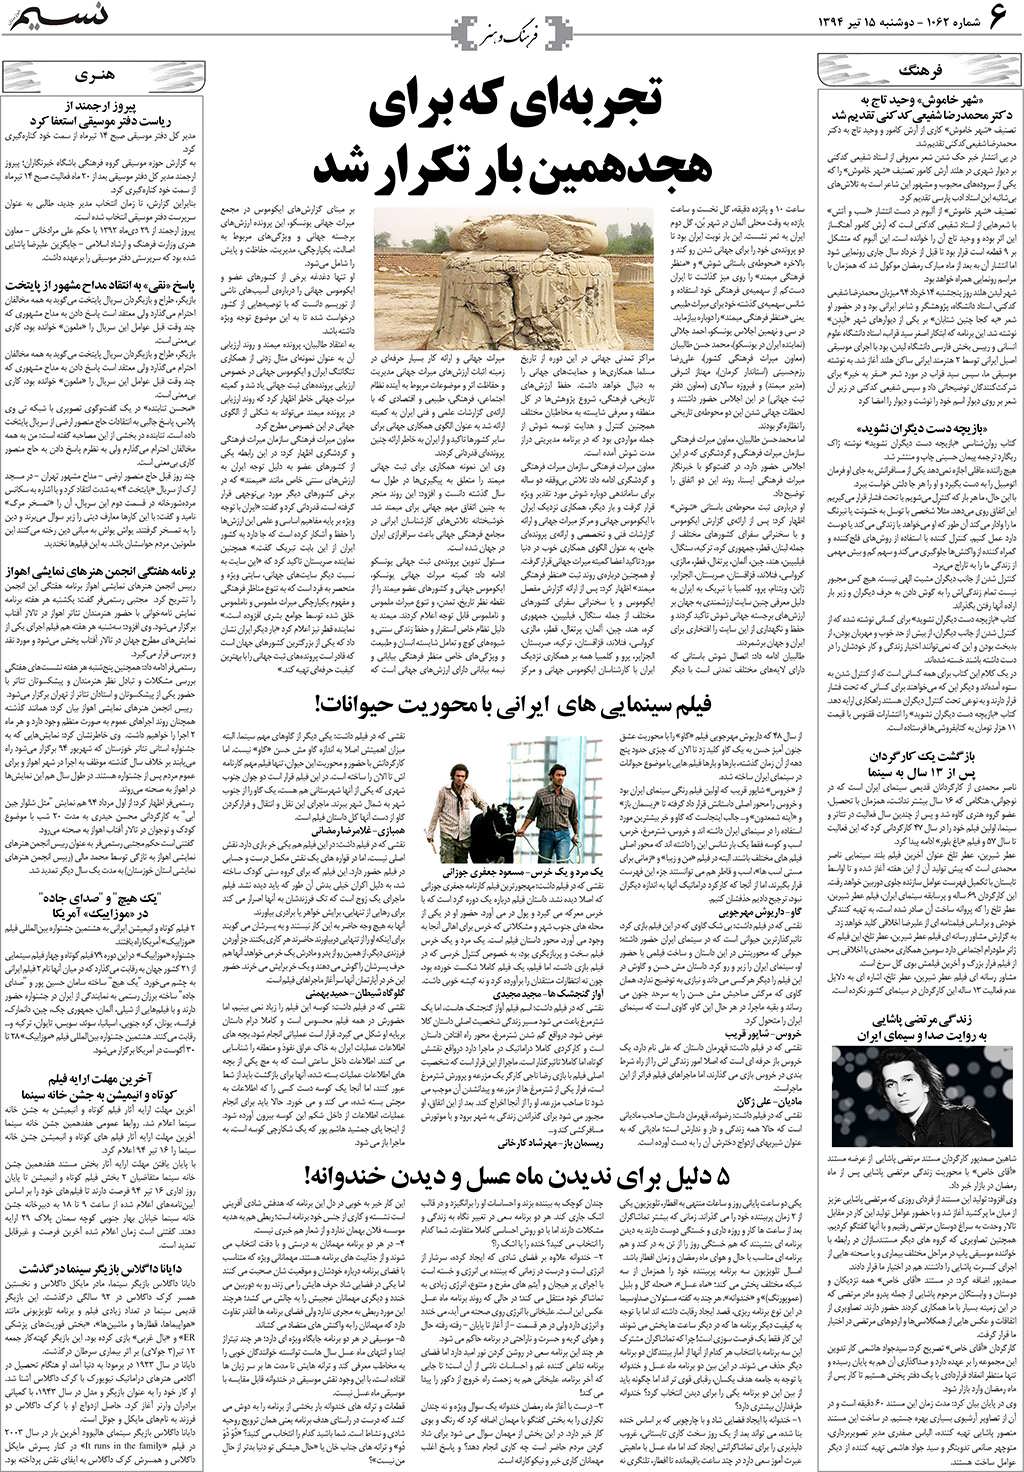 صفحه فرهنگ و هنر روزنامه نسیم شماره 1062